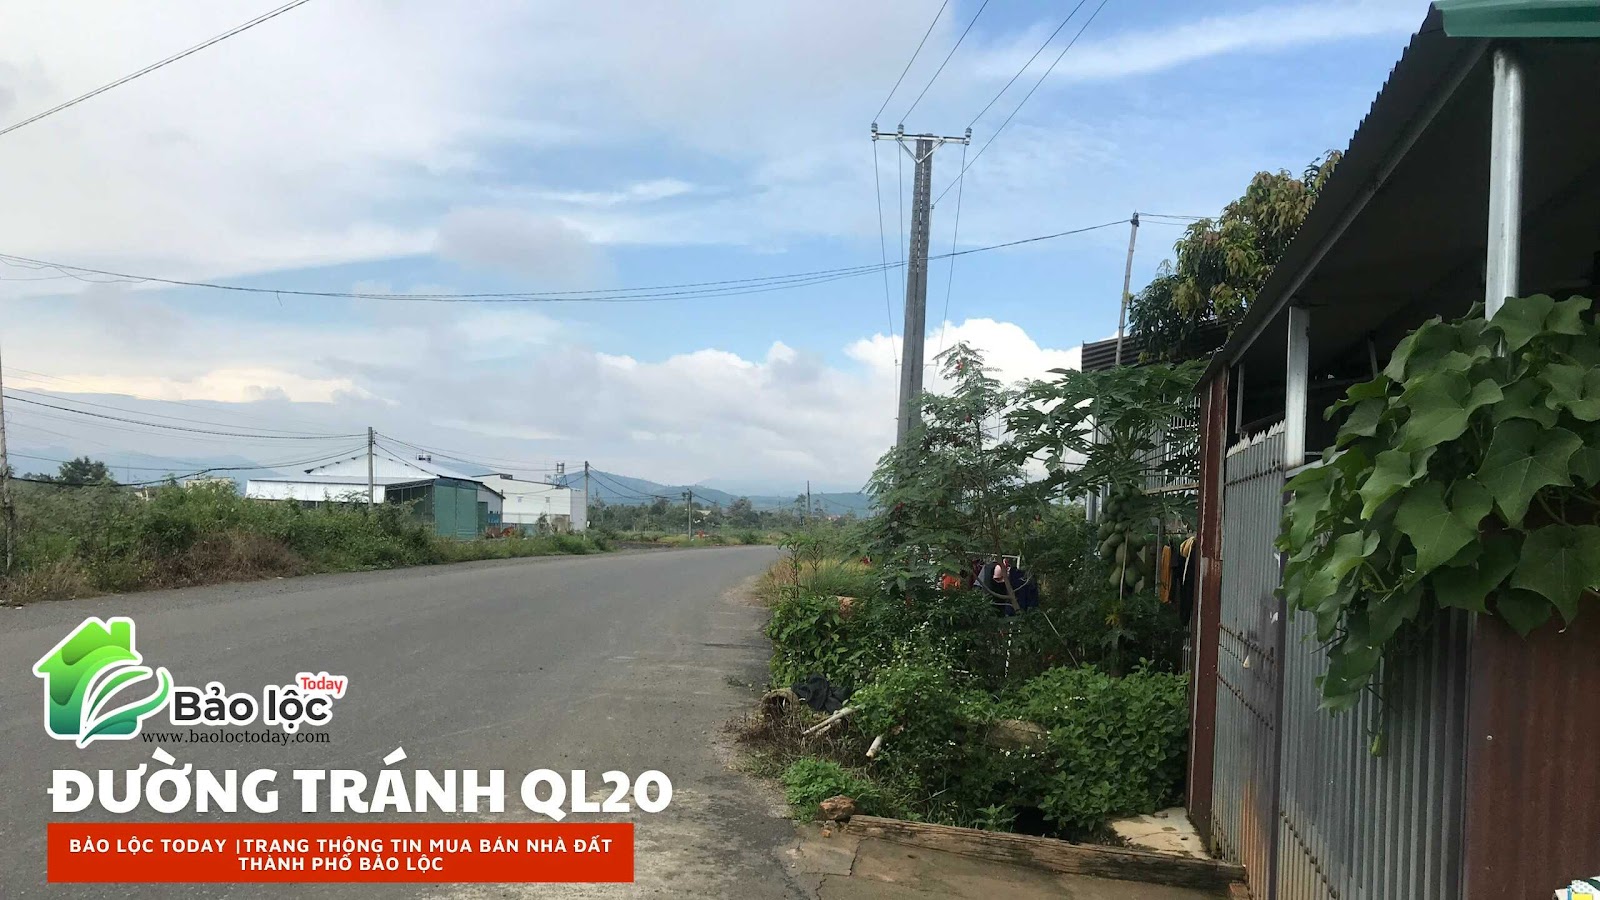 ảnh thực tế đường Tránh Ql20, nối từ xã lộc châu tới phường B'lao, thành phố Bảo lộc